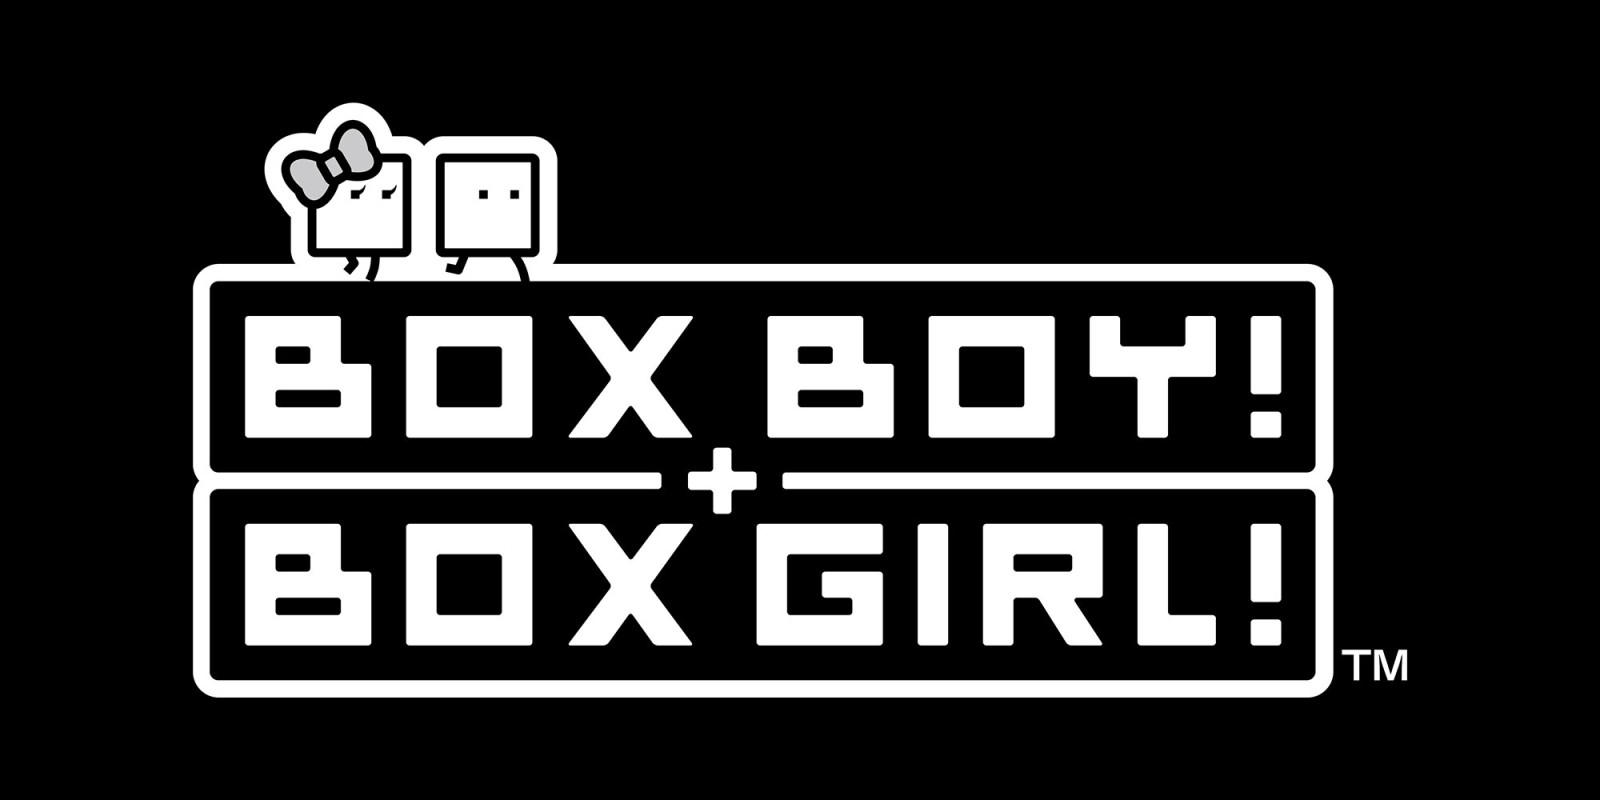 Boxboy Boxgirl Was Made With Unity Nintendo Everything